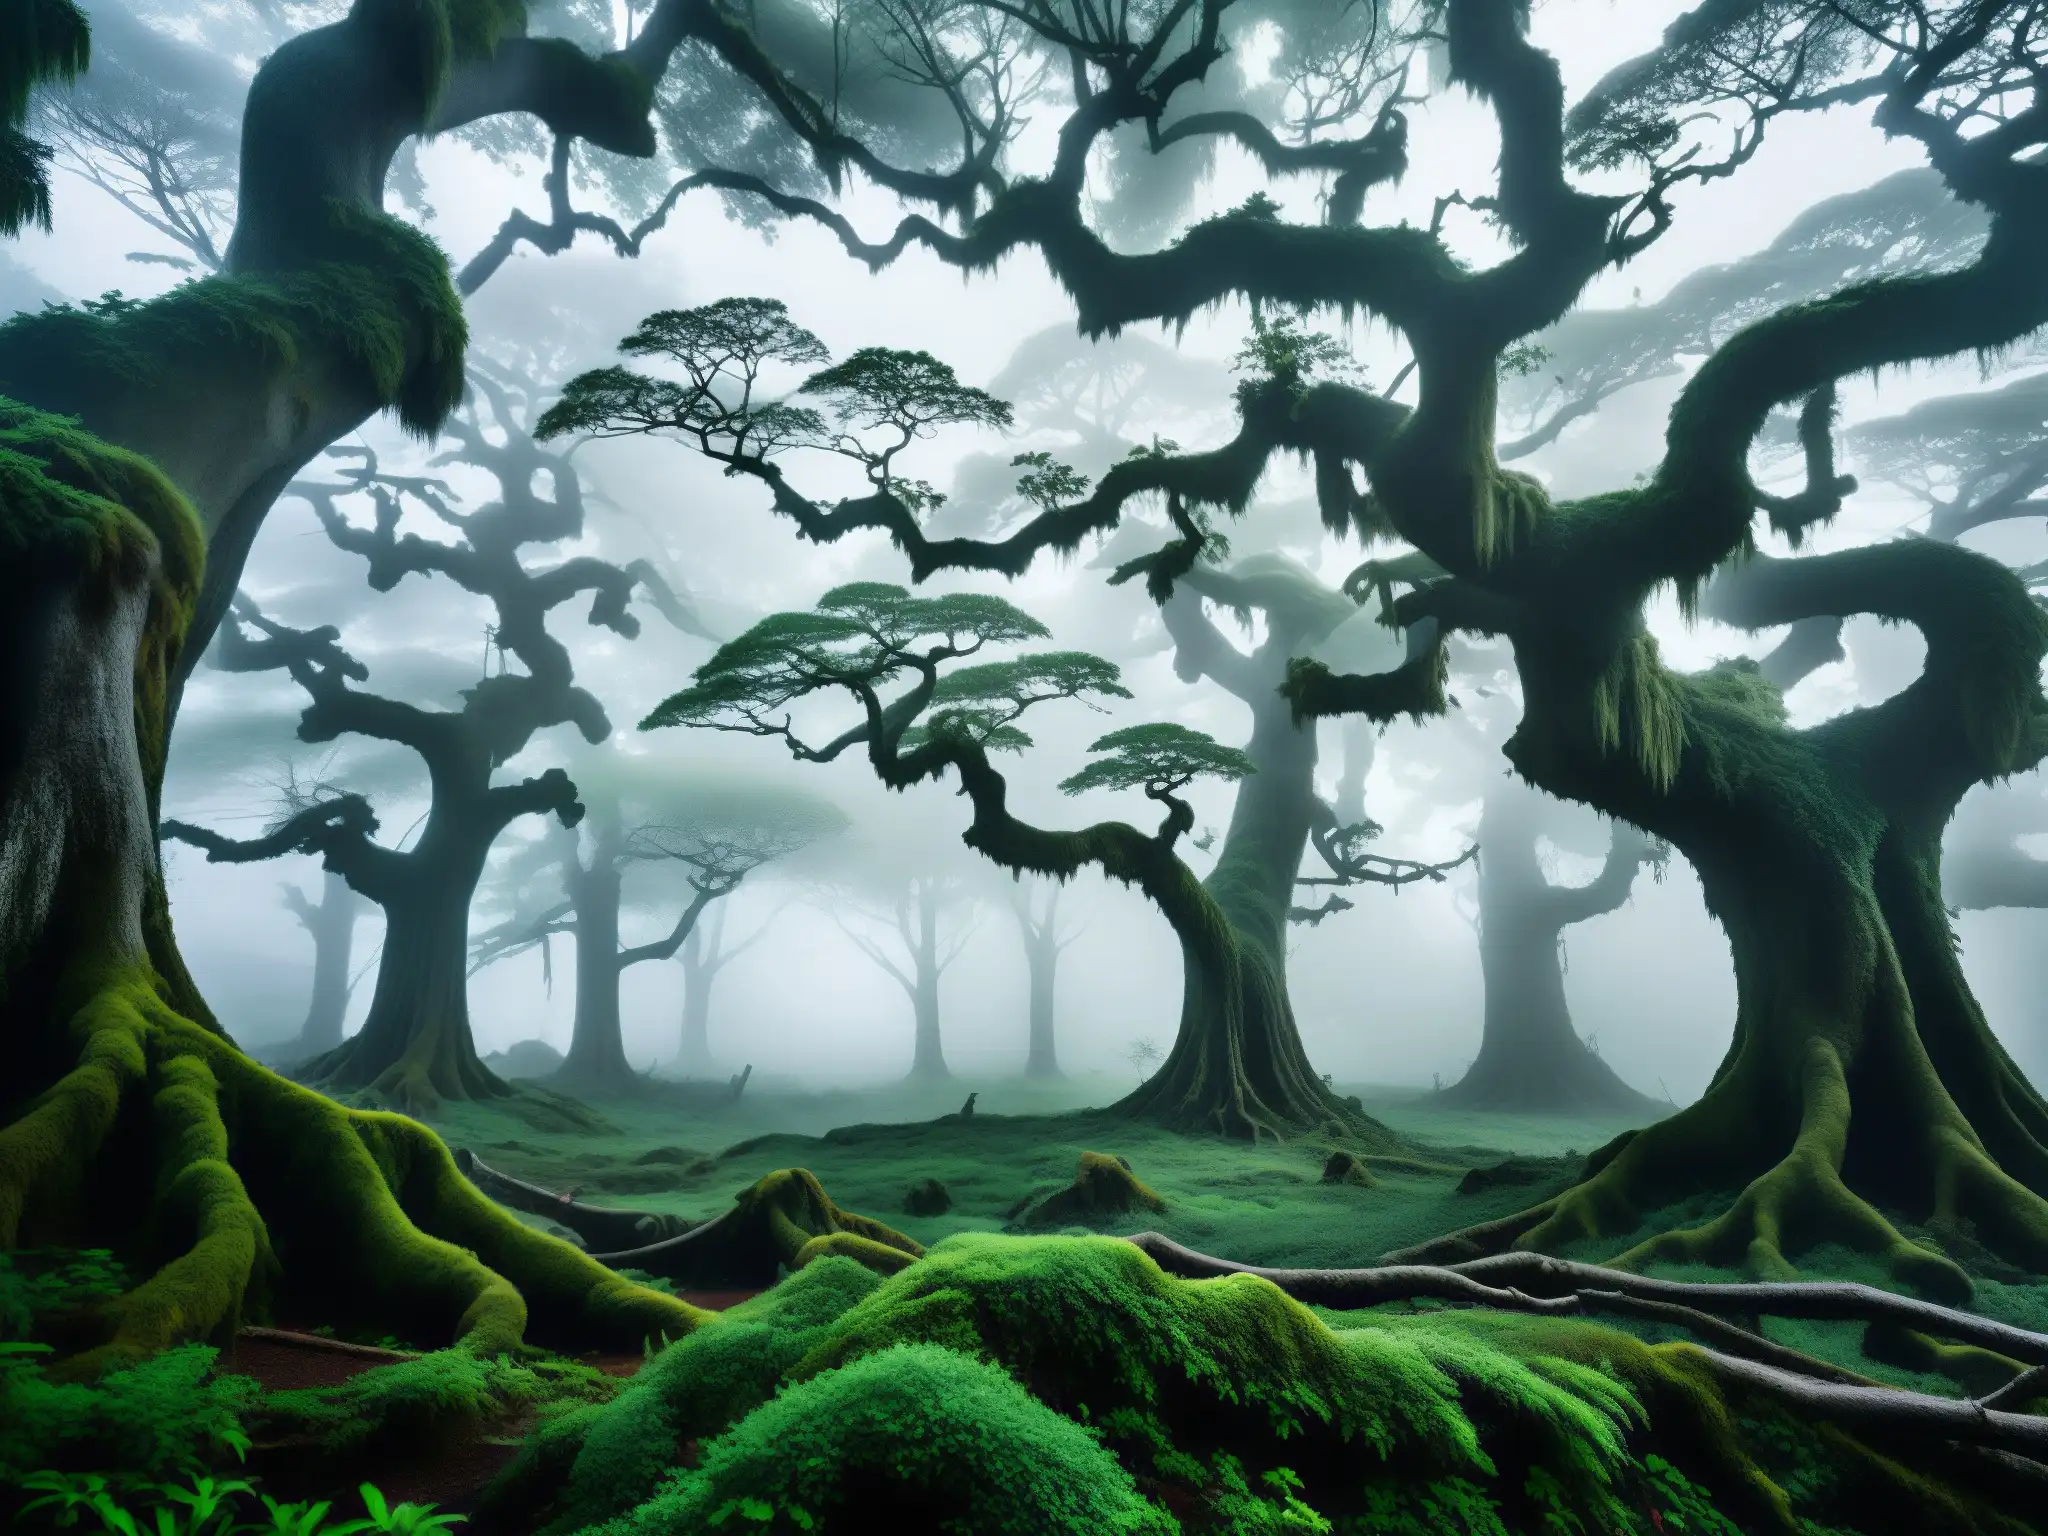 Imagen de un bosque japonés neblinoso, con árboles antiguos y telarañas delicadas brillando con rocío, evocando la presencia misteriosa de la Jorogumo tejedora de trampas